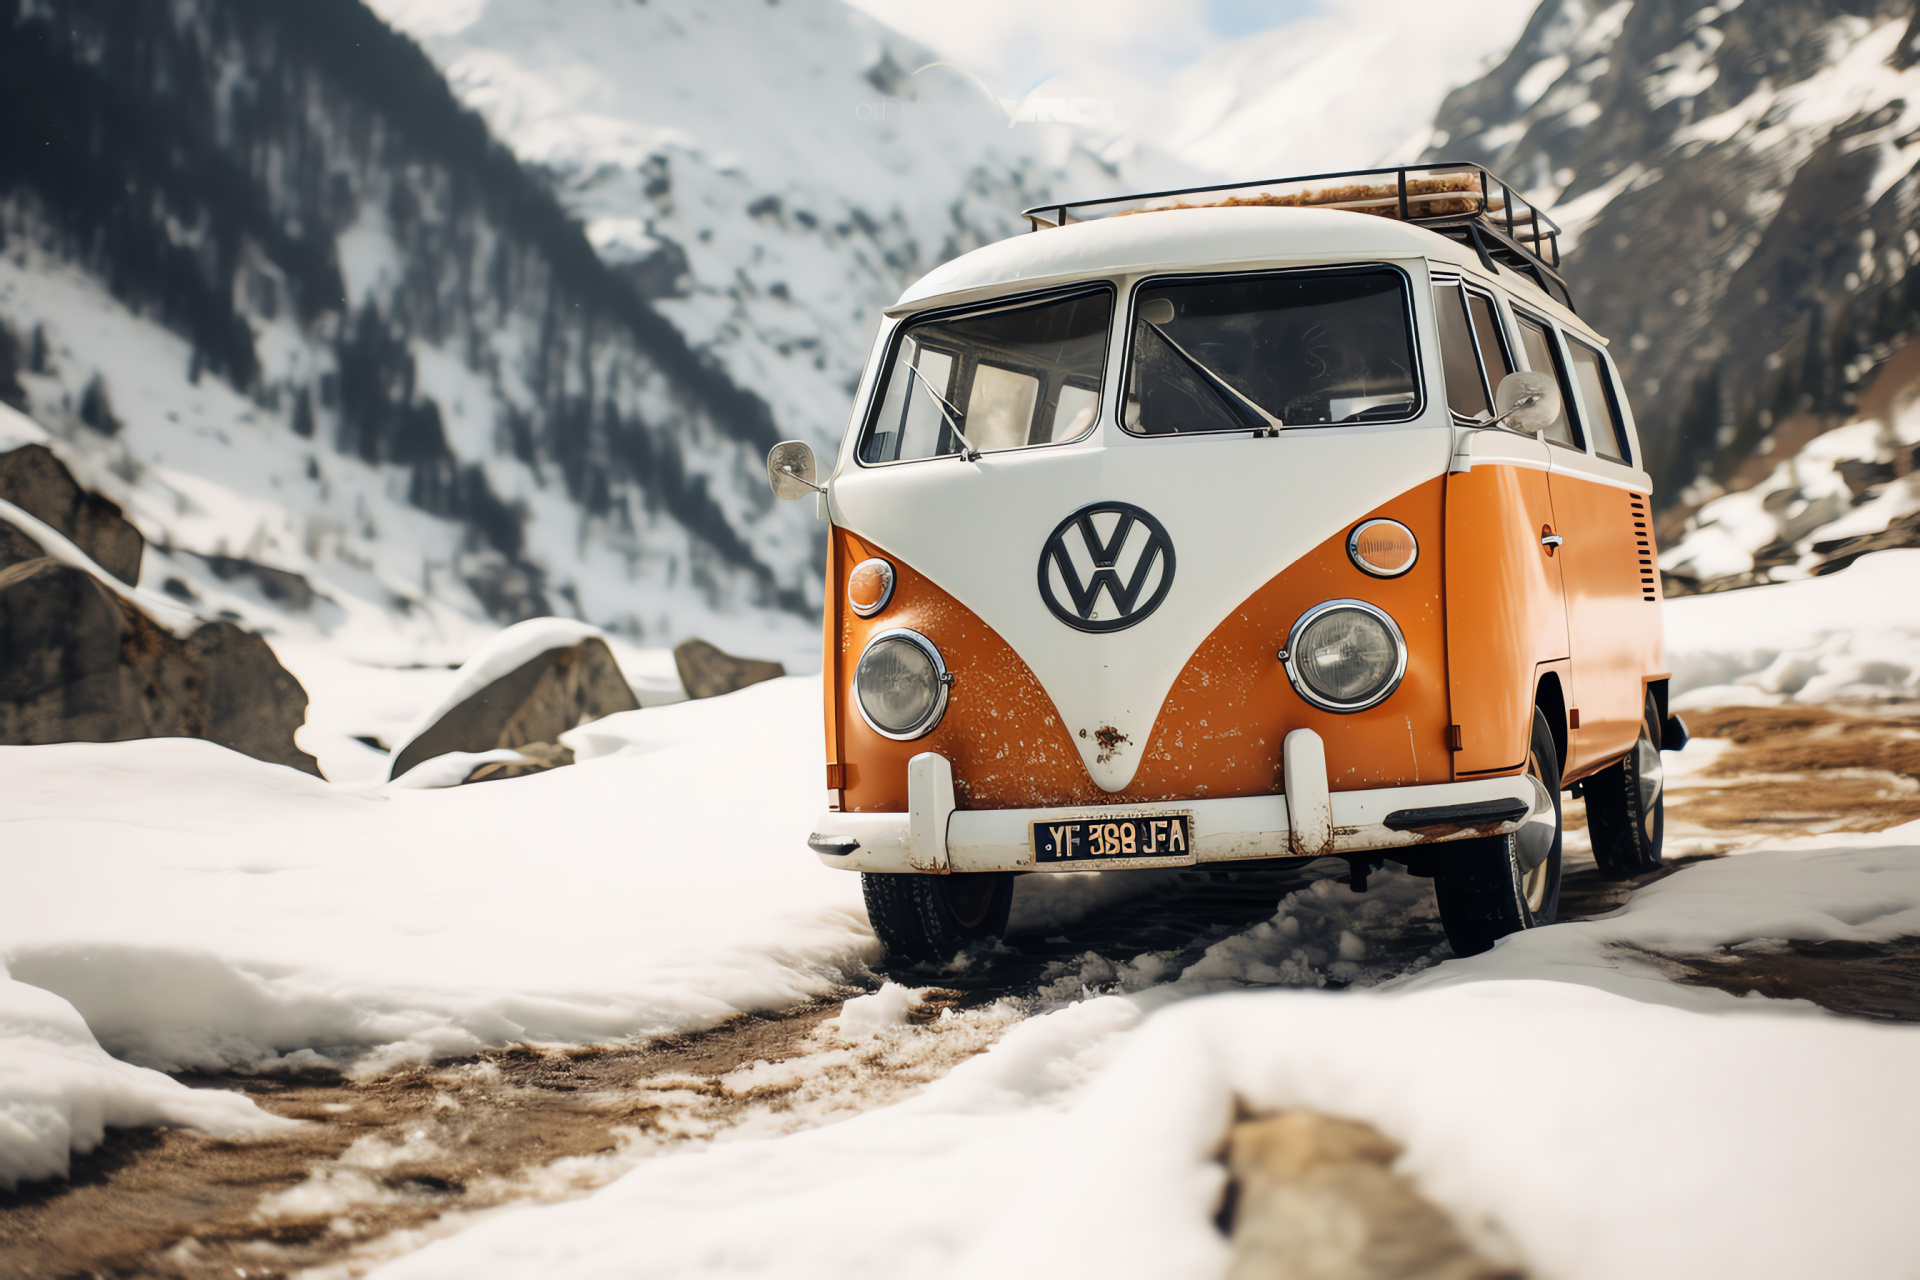 VW Camper in snow, Swiss Alpine adventure, mountain terrain vehicle, winter recreation, frosty cabin charm, HD Desktop Image